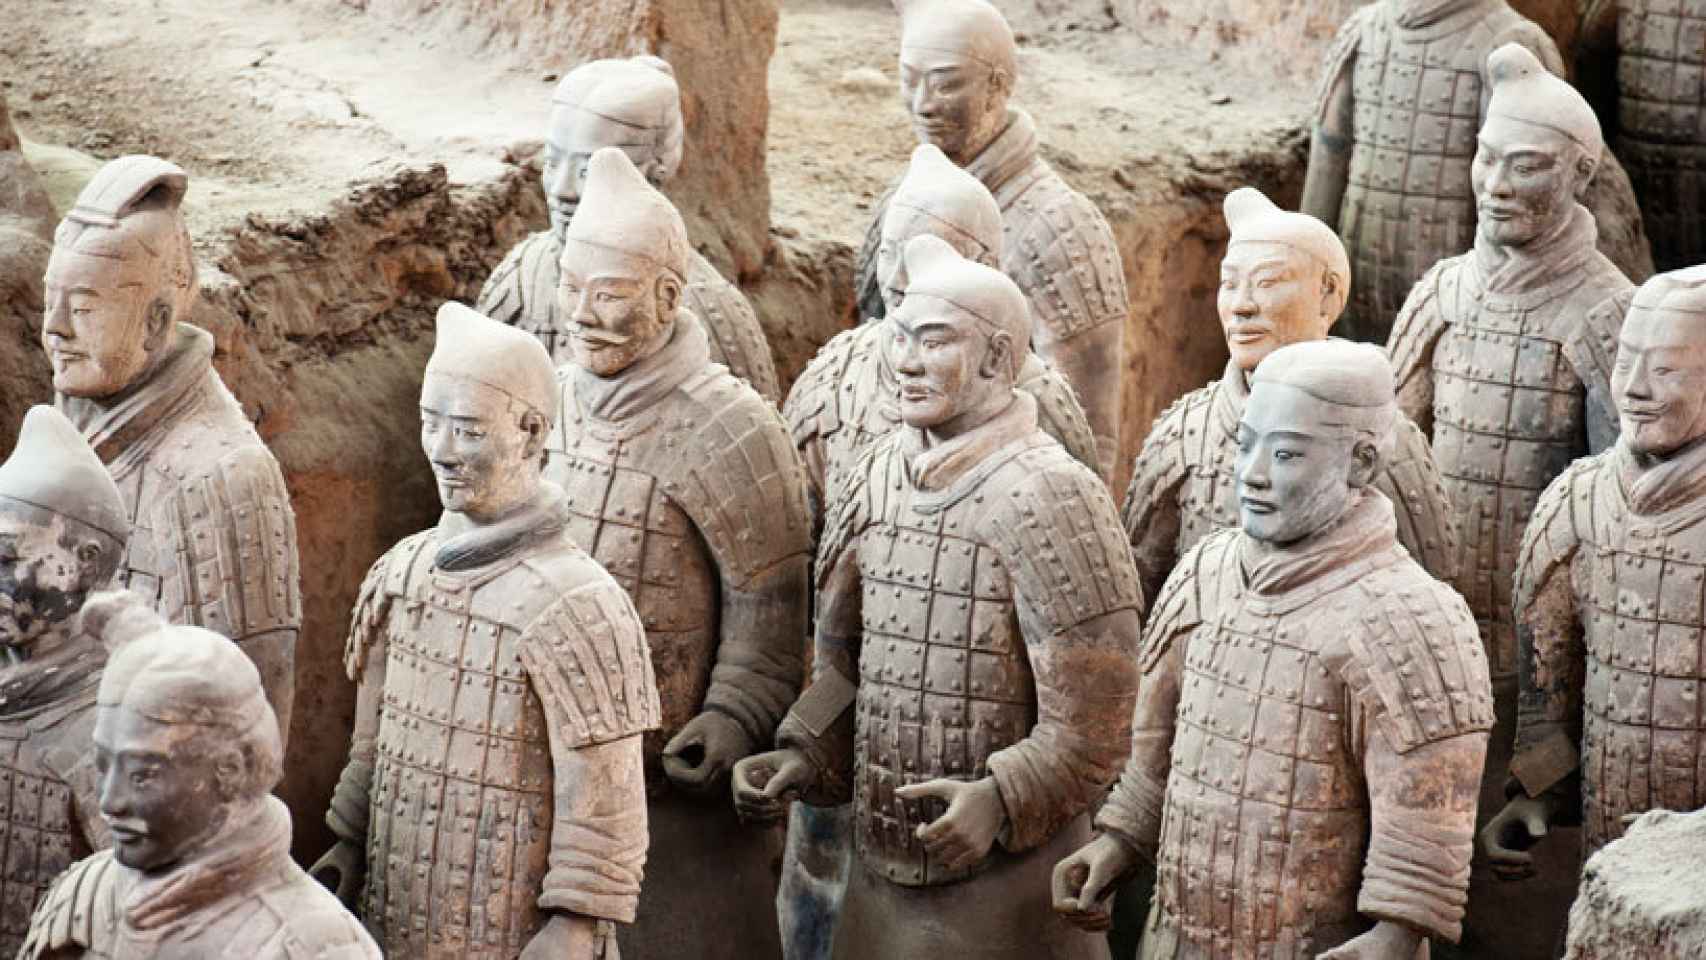 Patrimonio_cultural-China-Arqueologia-Patrimonio_241487261_44038119_1706x960.jpg